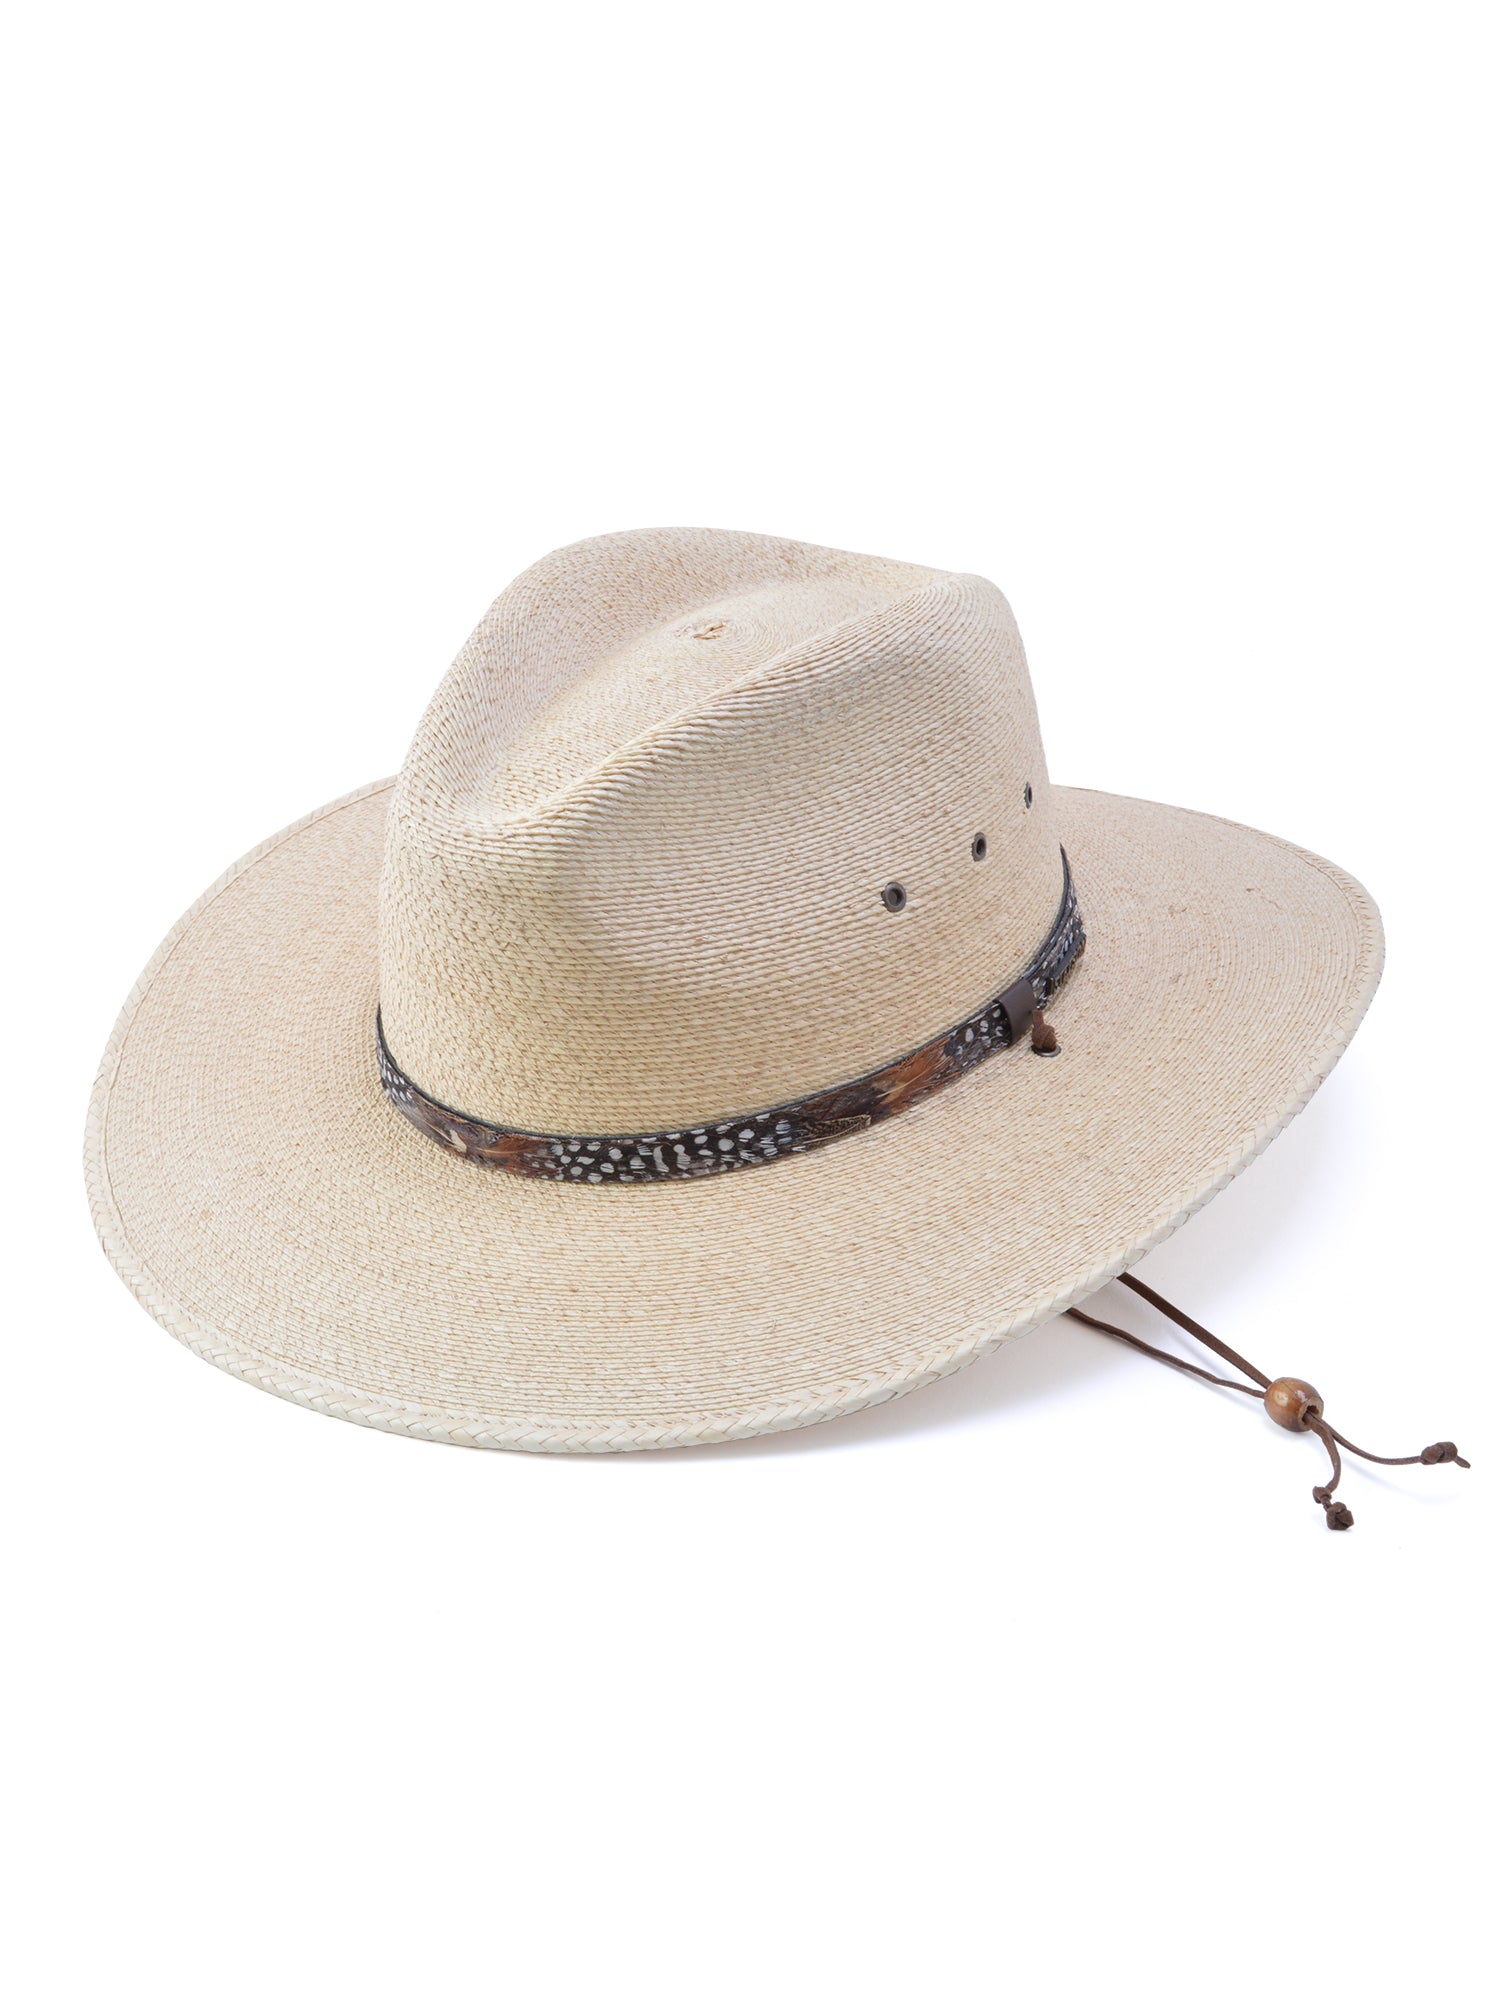 Stetson Cumberland Palm Straw Hat